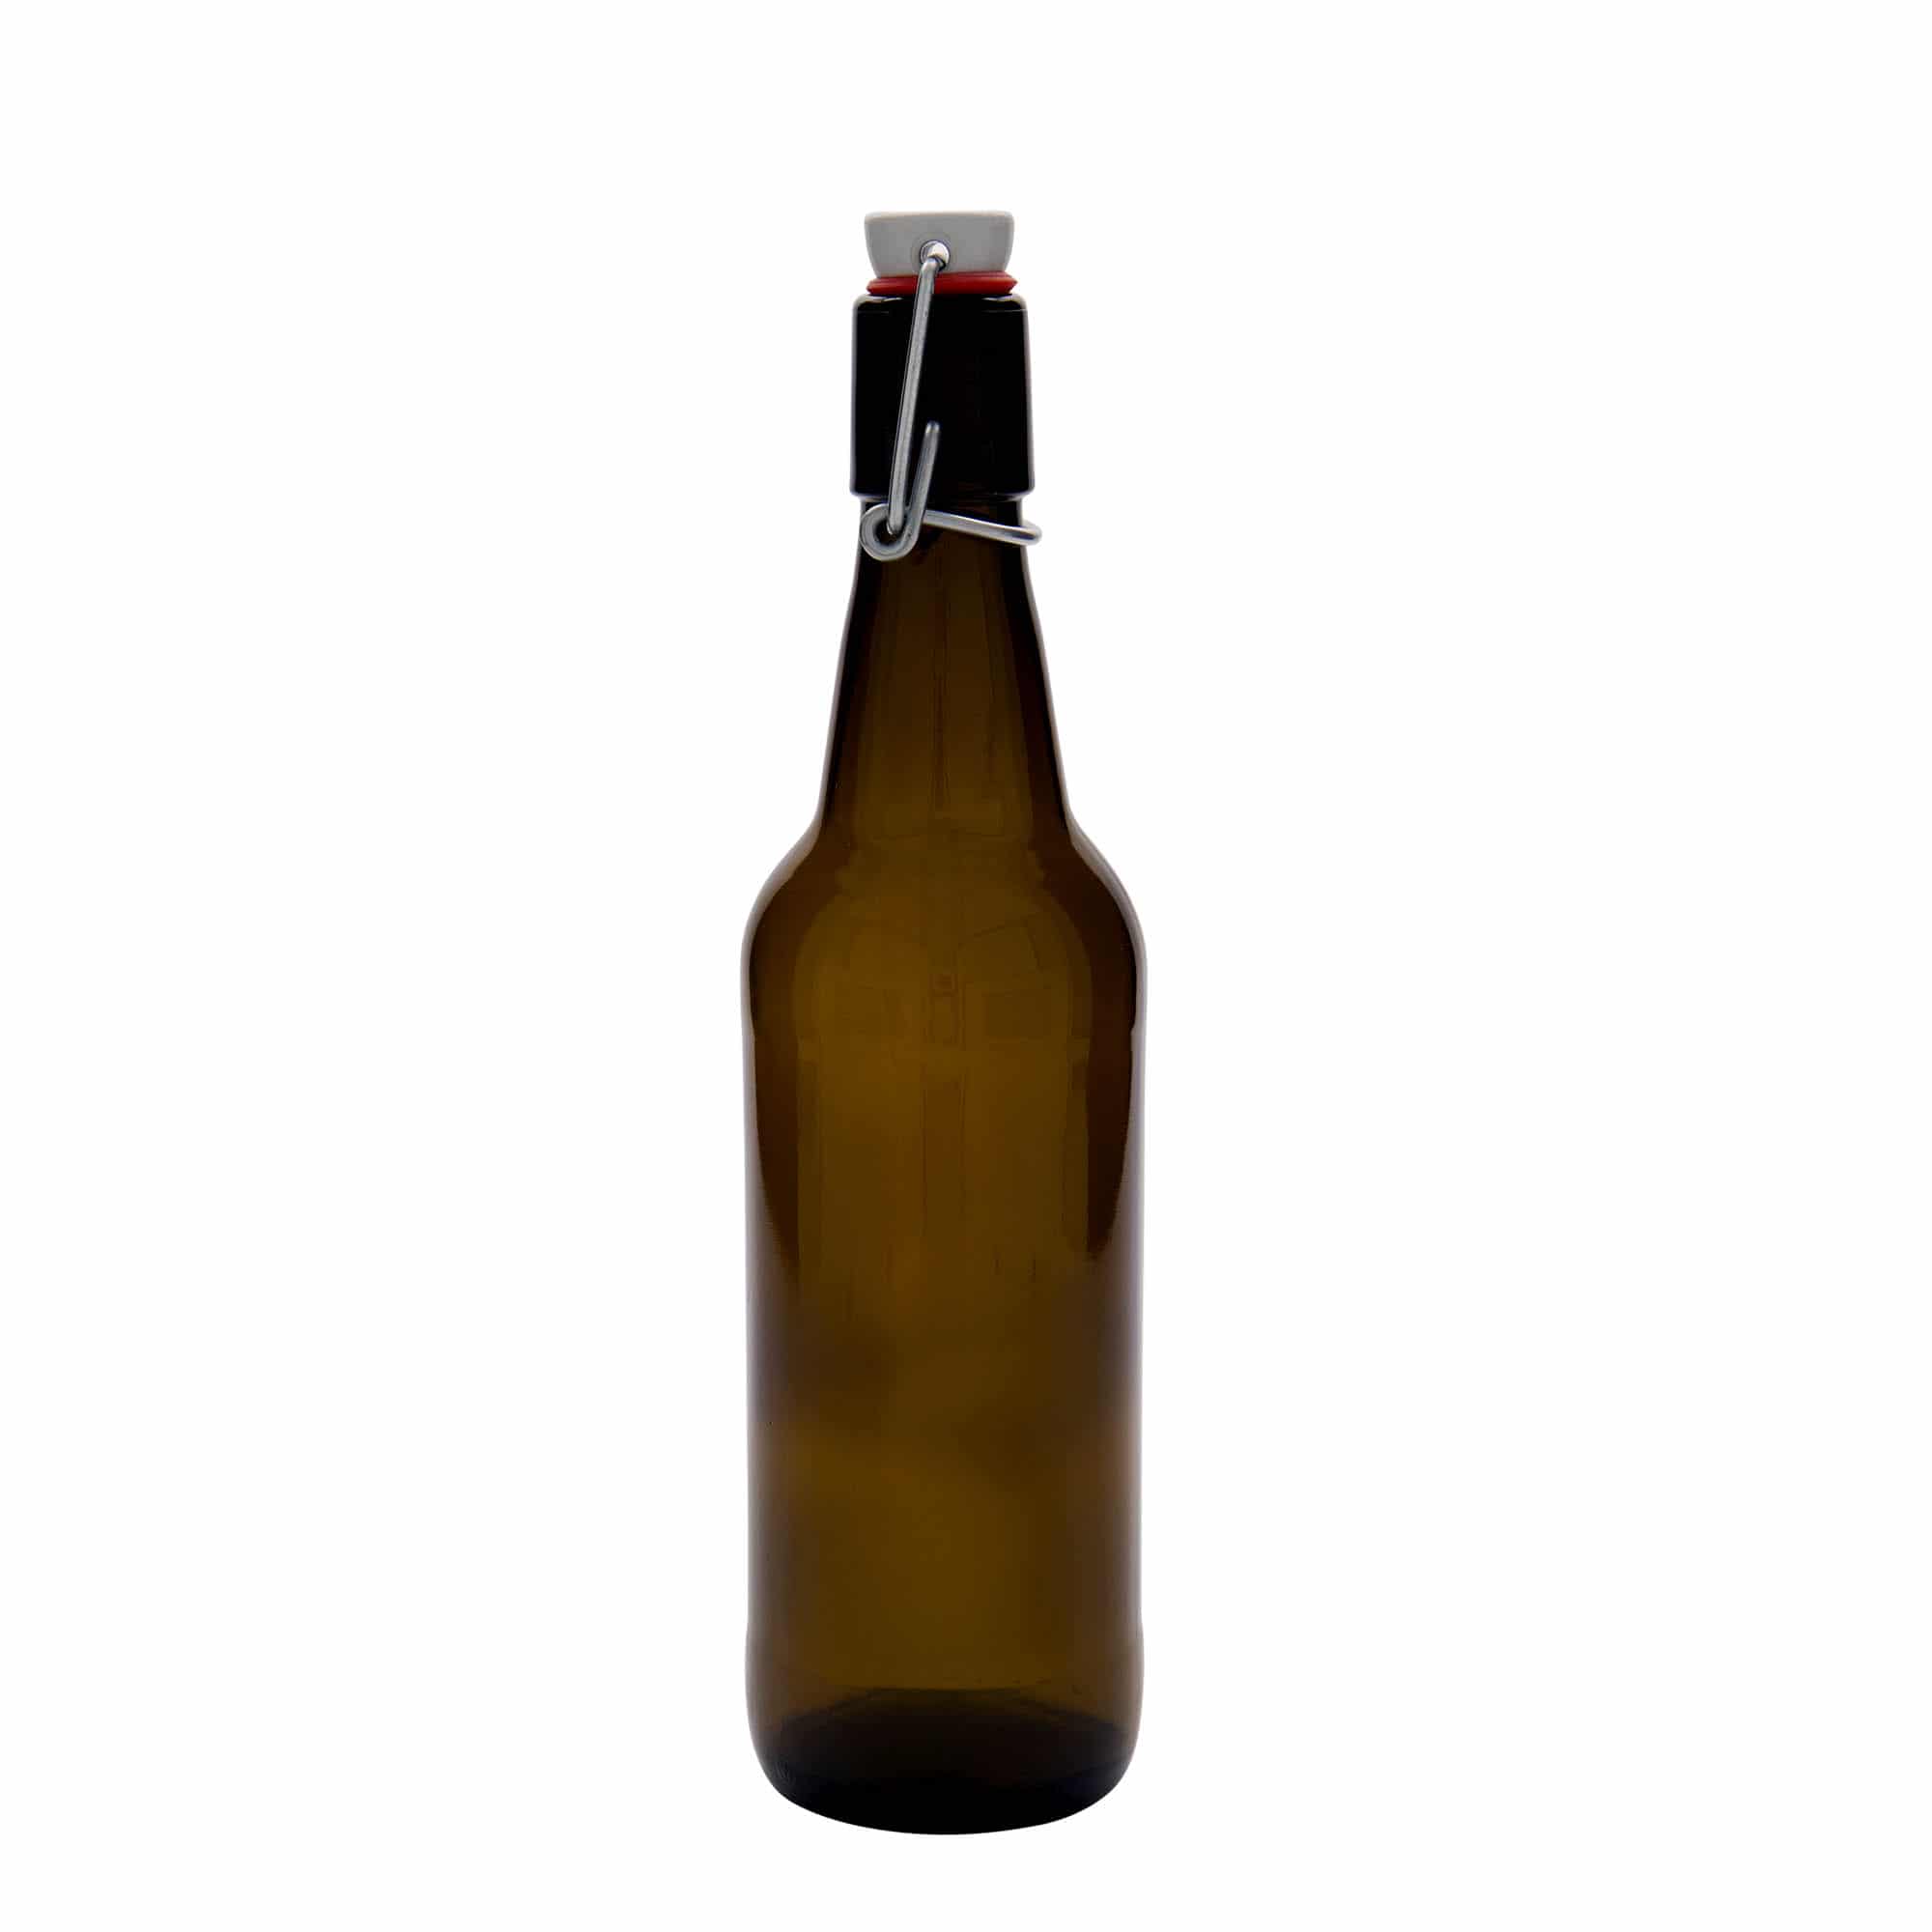 500 ml beer bottle, glass, brown, closure: swing top